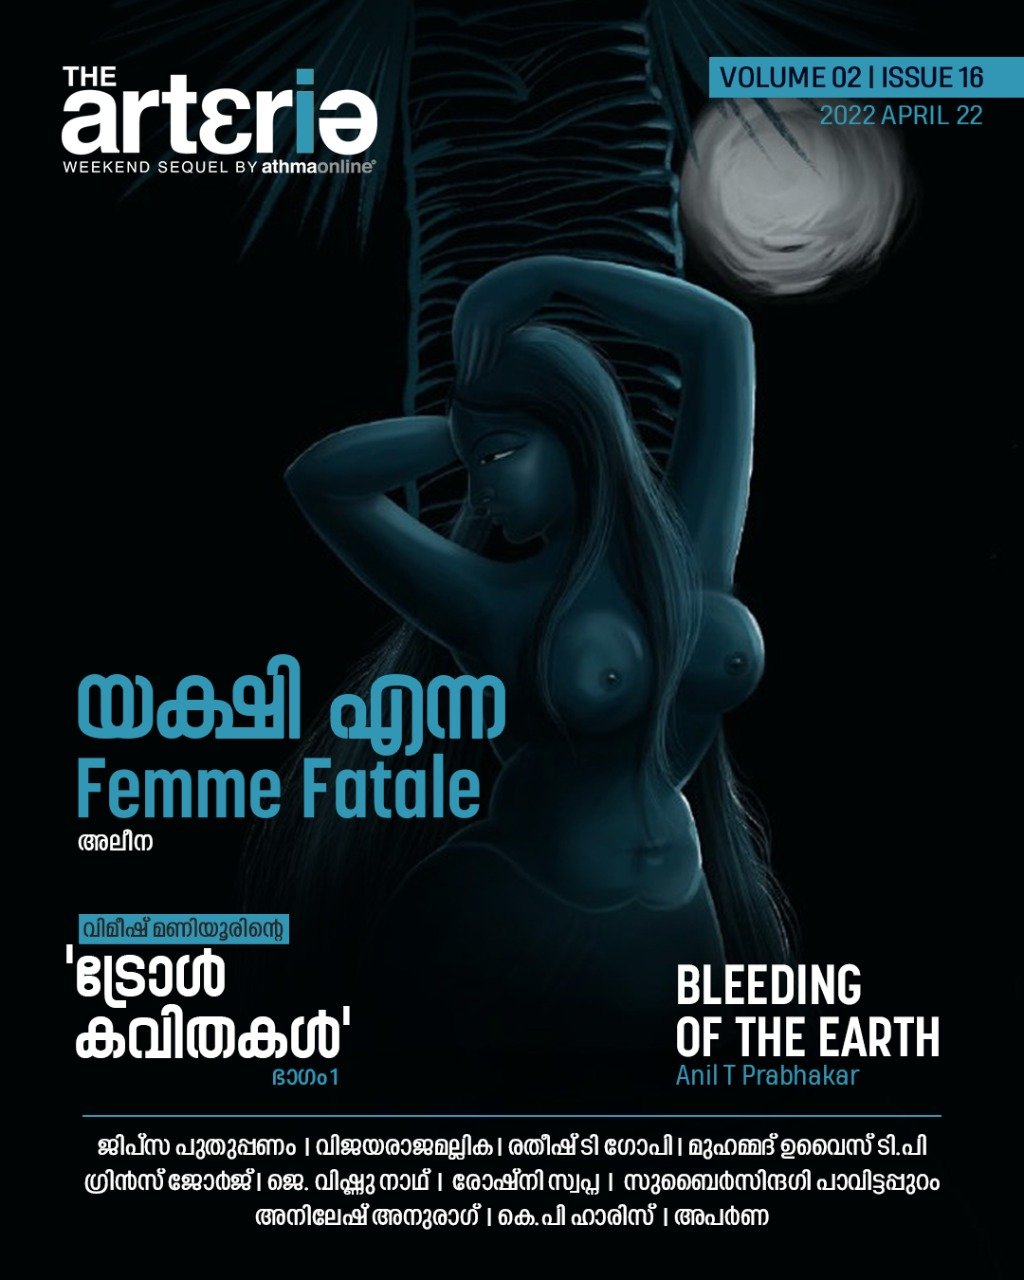 the arteria volume 02 - issue 16 - cover